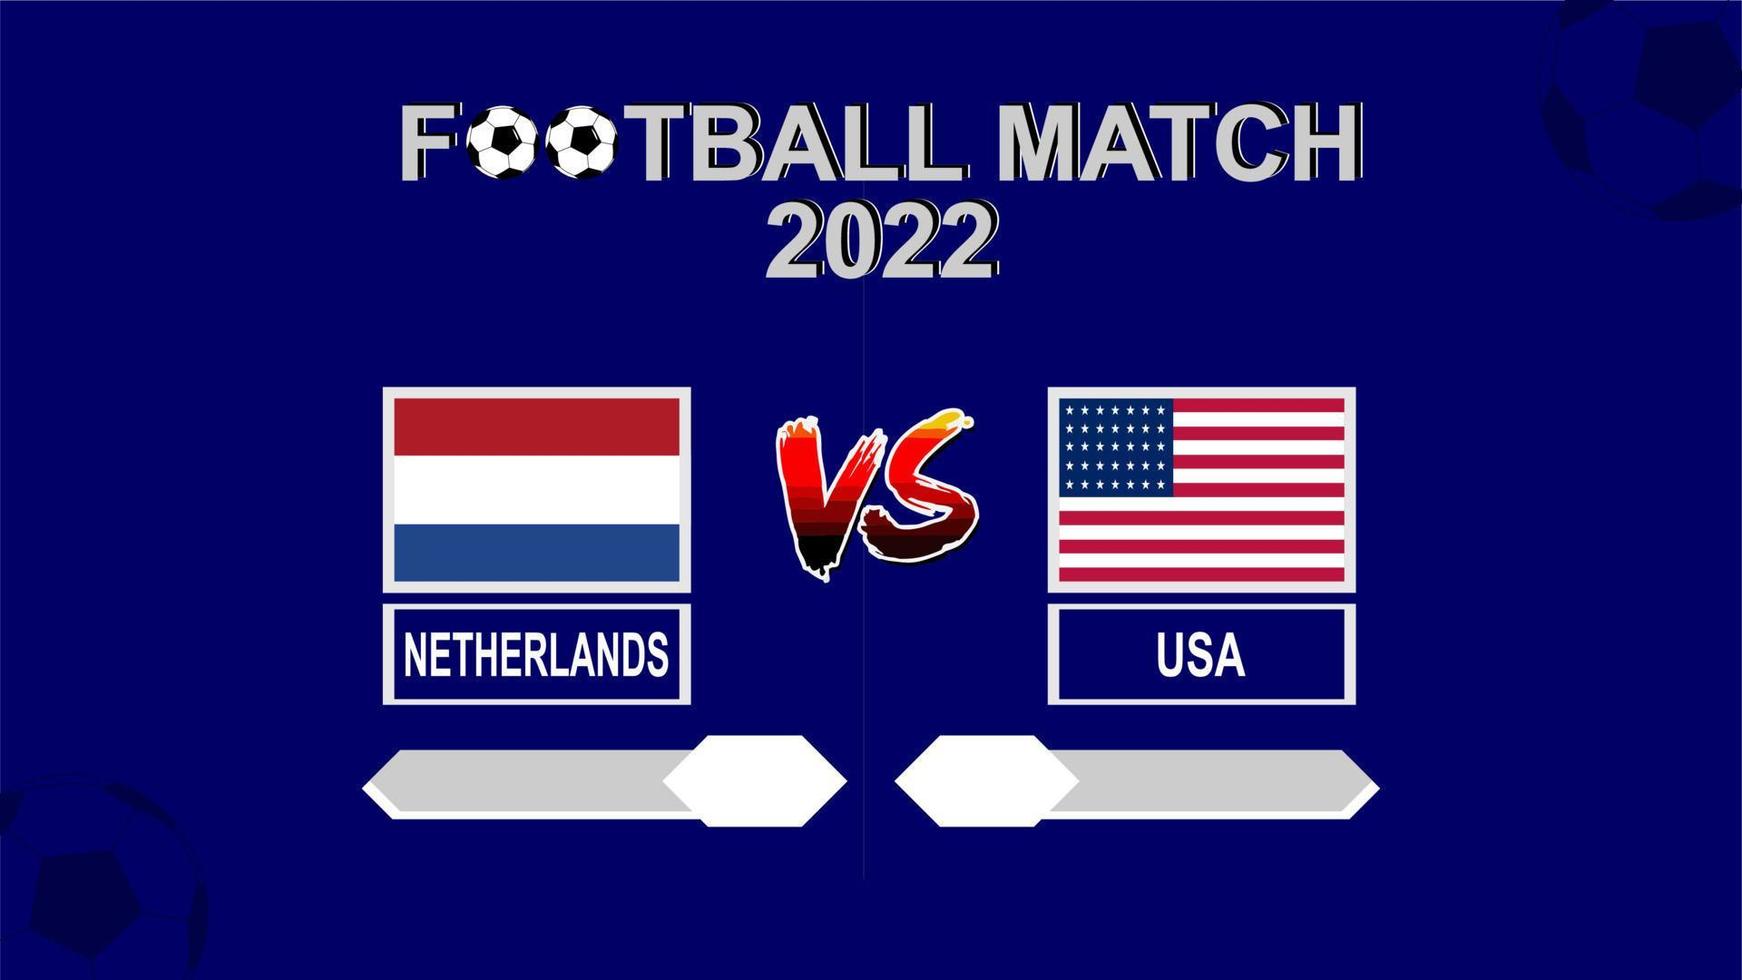 niederlande vs usa fußballpokal 2022 blauer vorlagenhintergrundvektor für zeitplan oder ergebnisspiel vektor